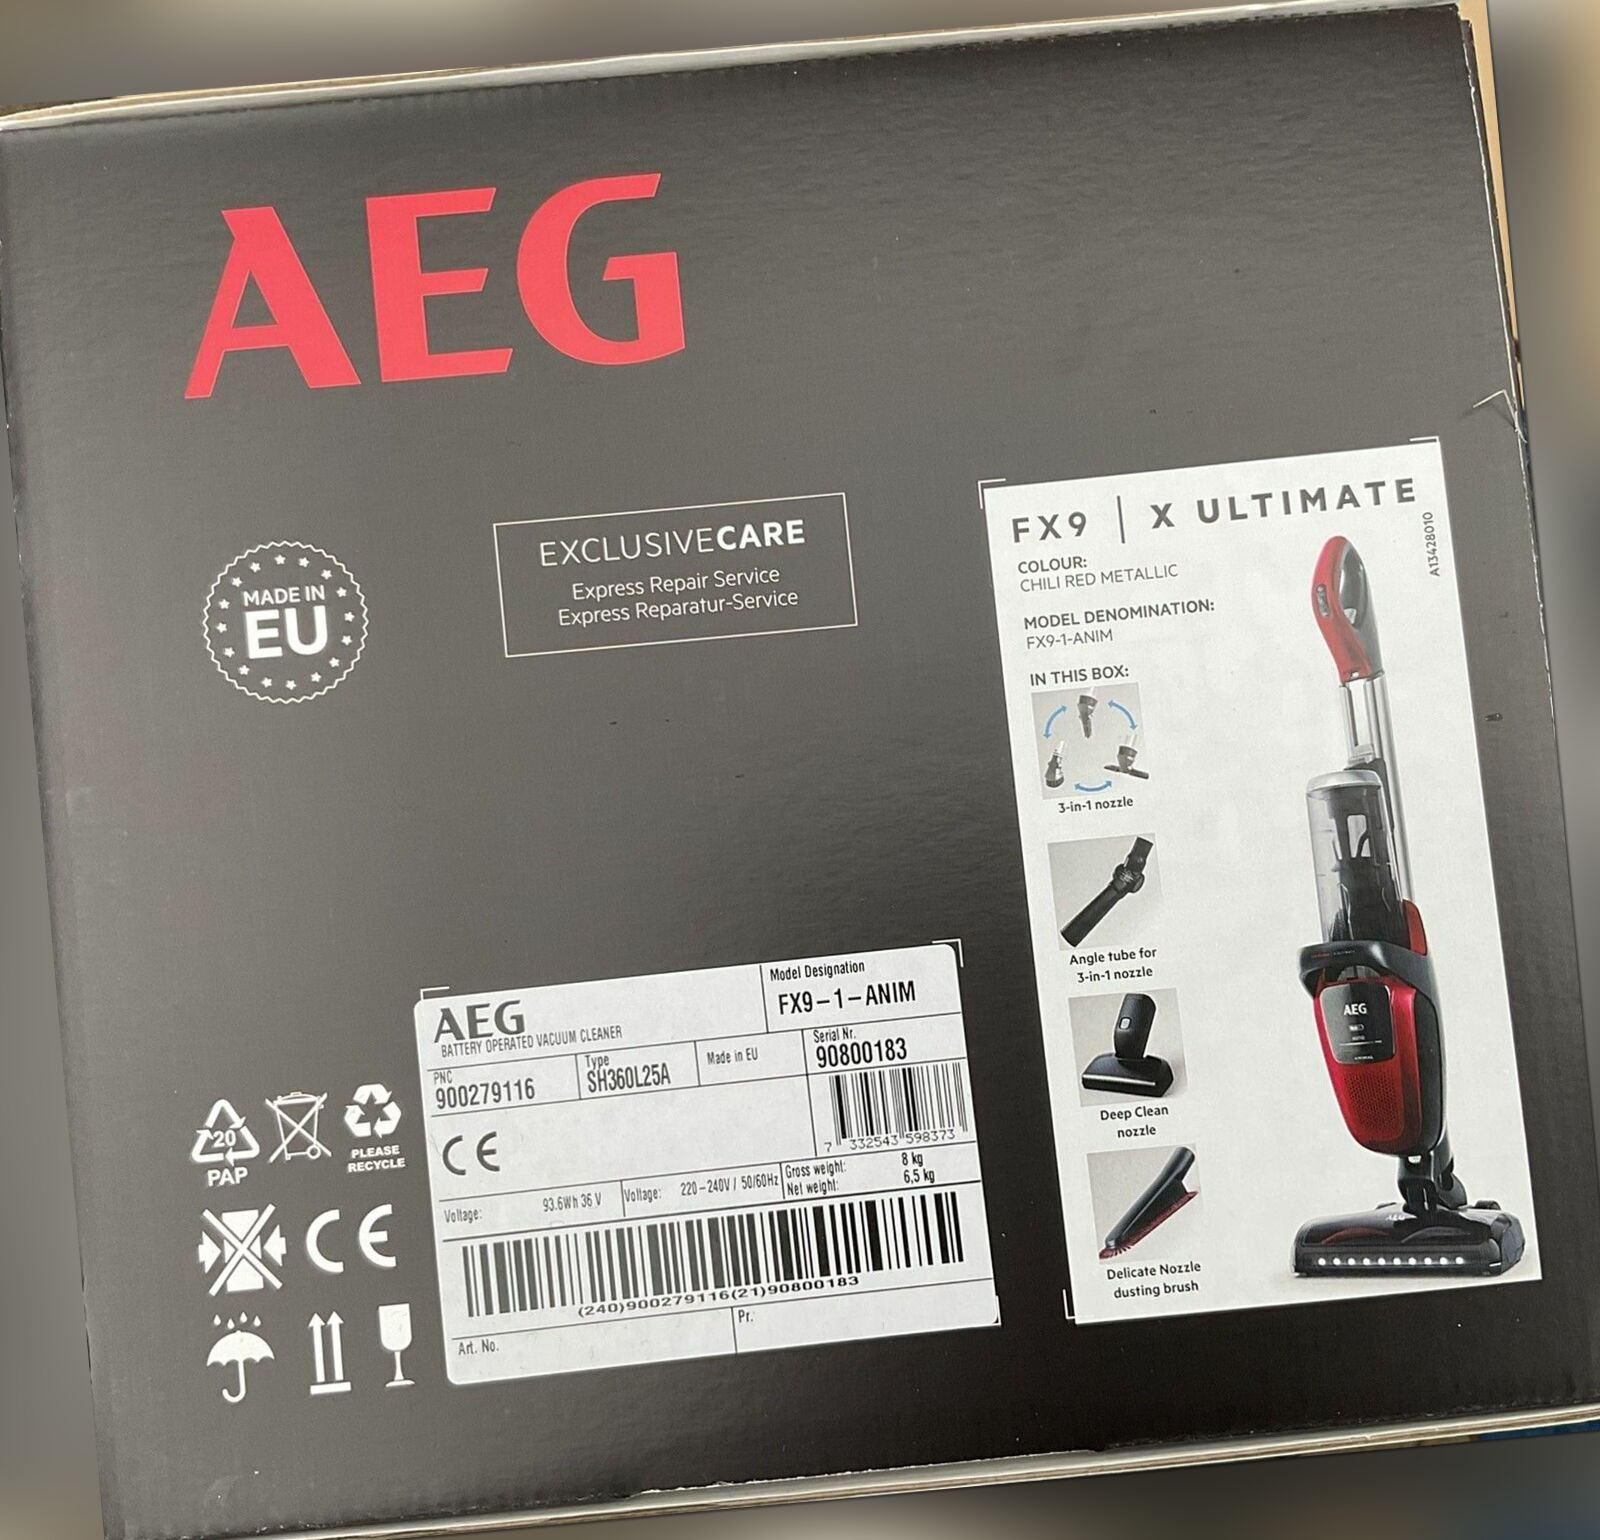 Vac AEG FX9 Chilli rot aufrecht Staubsauger brandneu in Verpackung